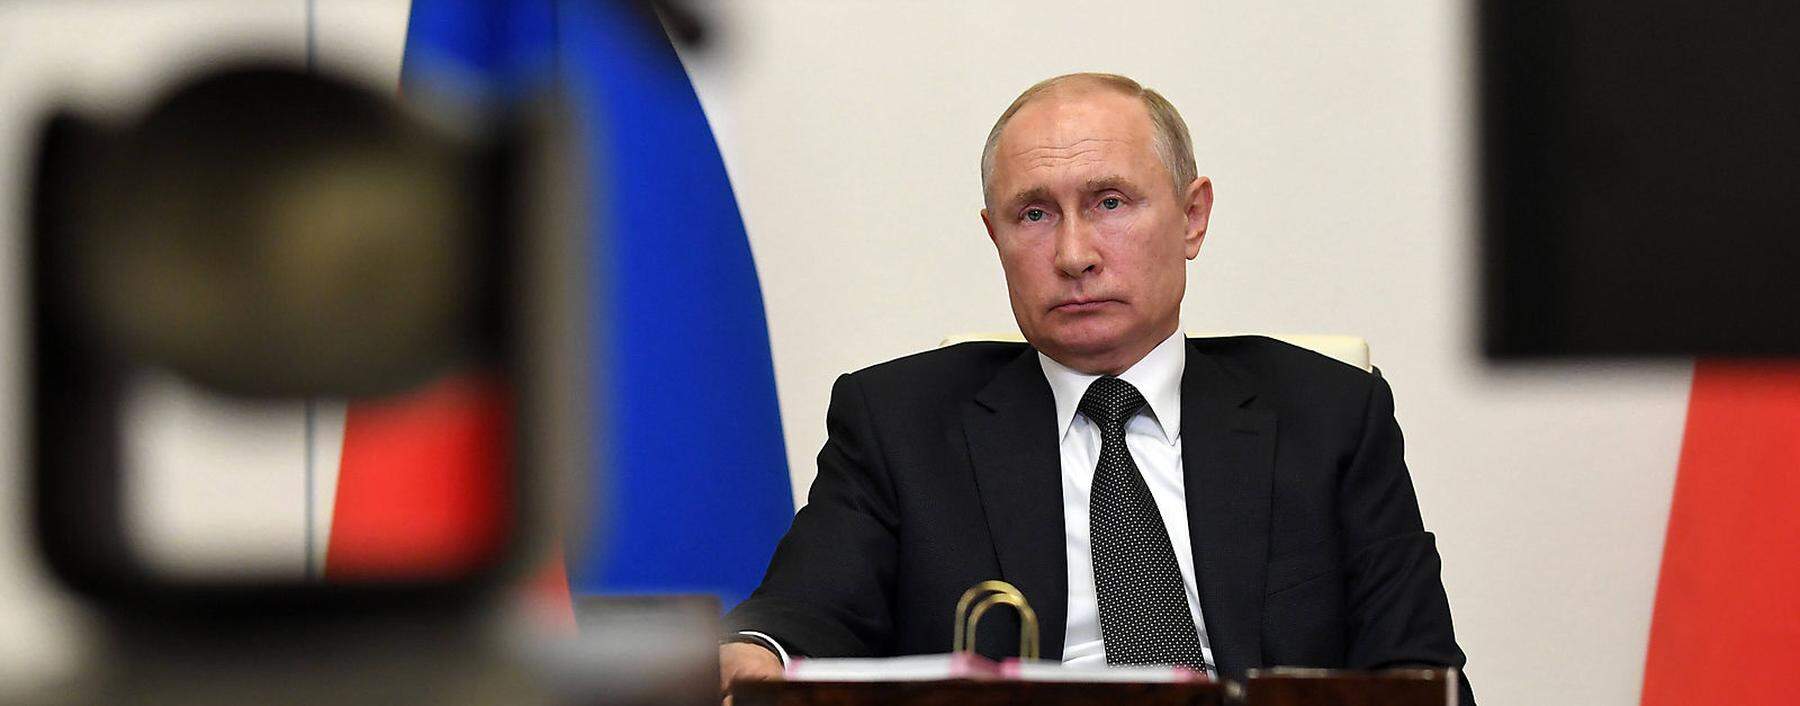 Kreml-Chef Putin in Zeiten der Pandemie: Videokonferenz mit Regierungsmitgliedern.